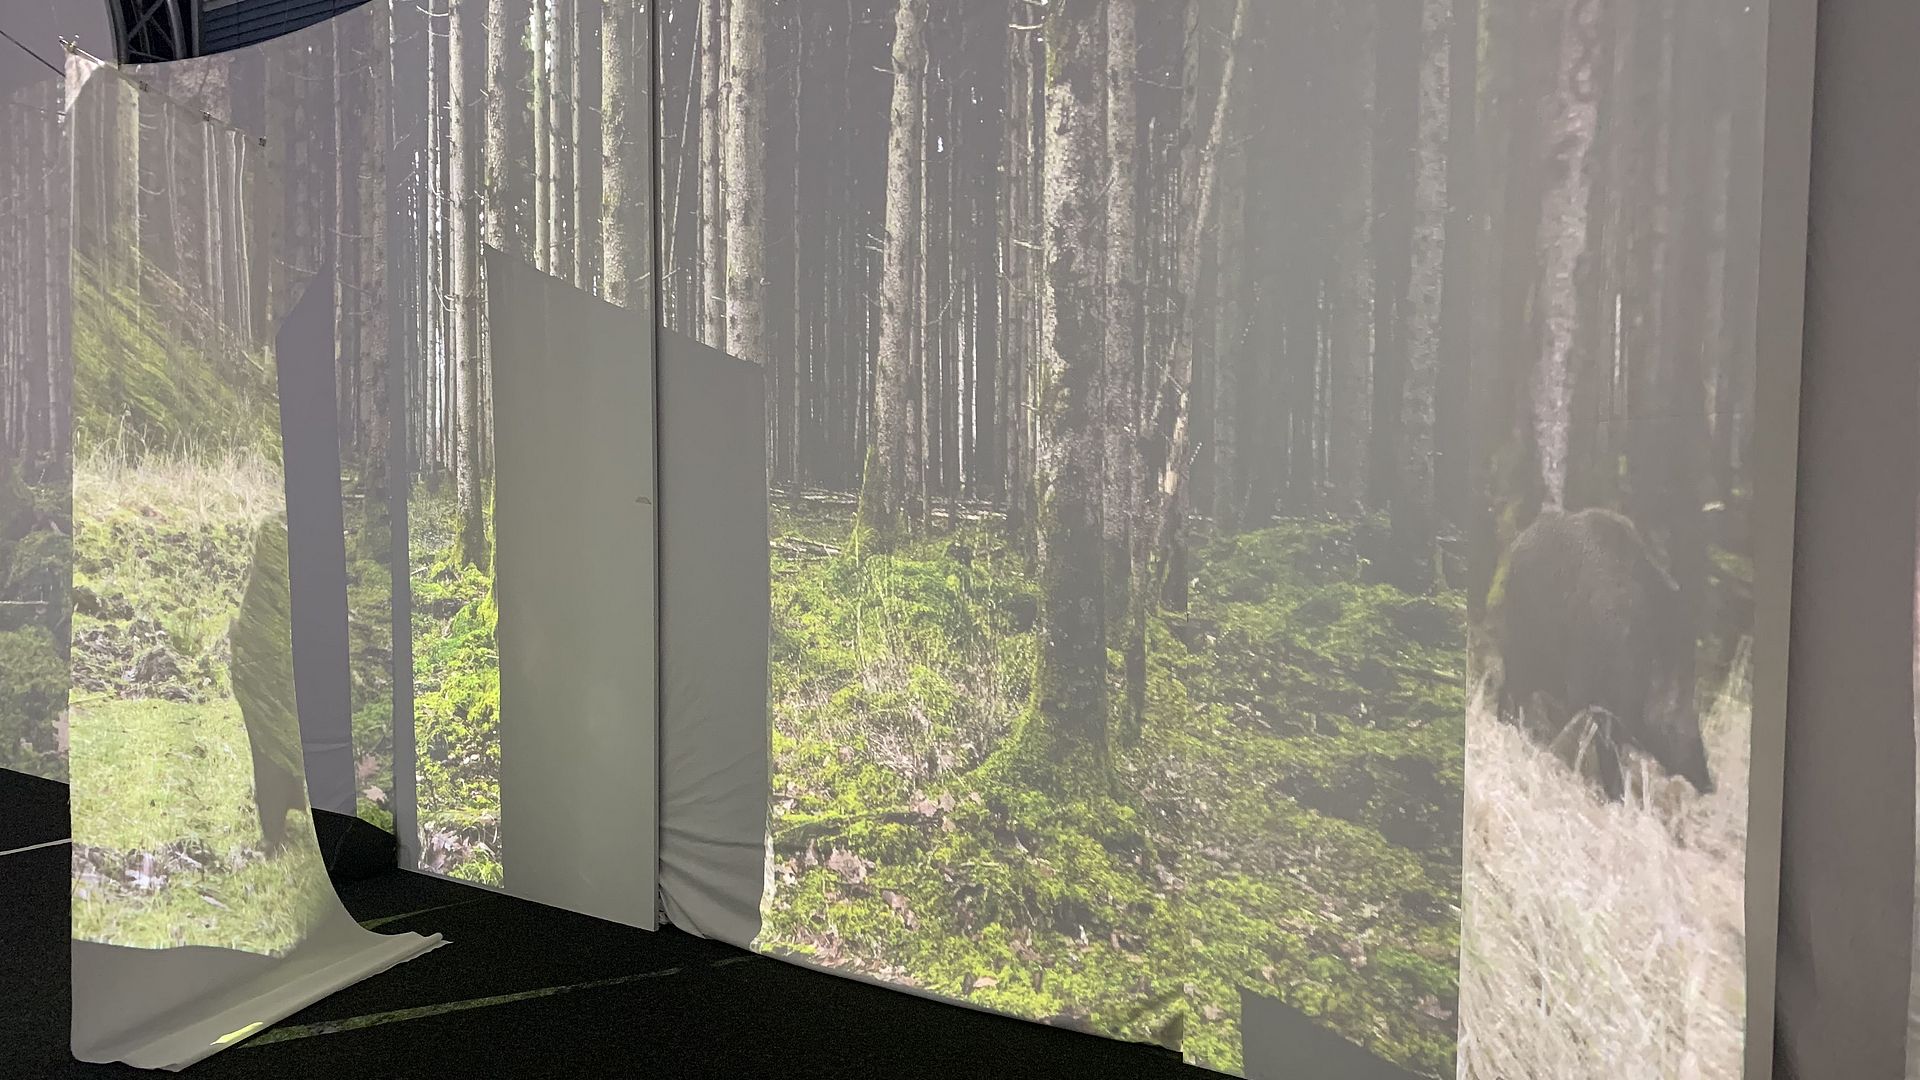 VR-Installation "Approaching Nature" im VRlab. Projektion eines Waldes auf mehreren Leinwänden.